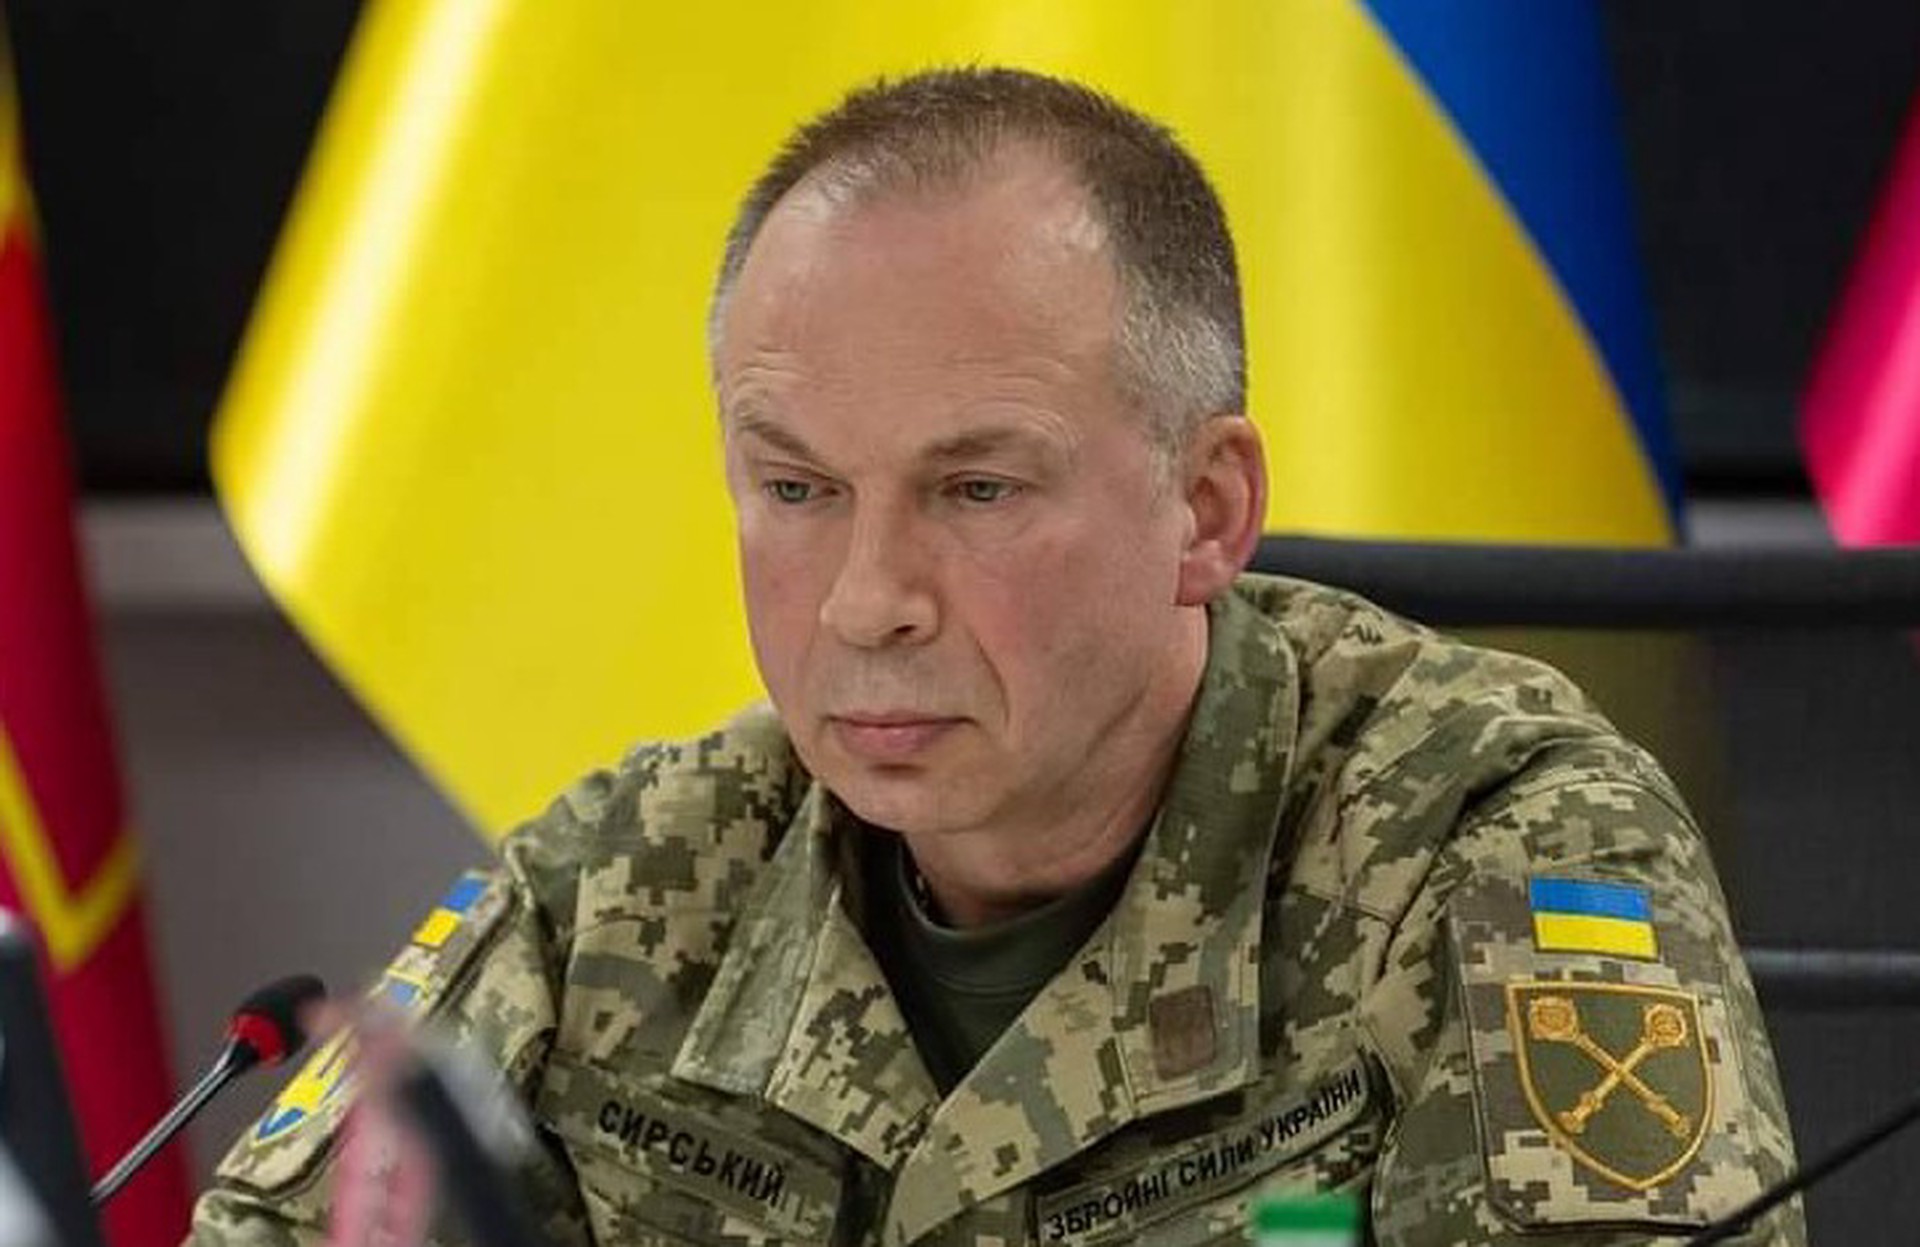 Риттер: Сырскому приказали начать крупное наступление под Харьковом